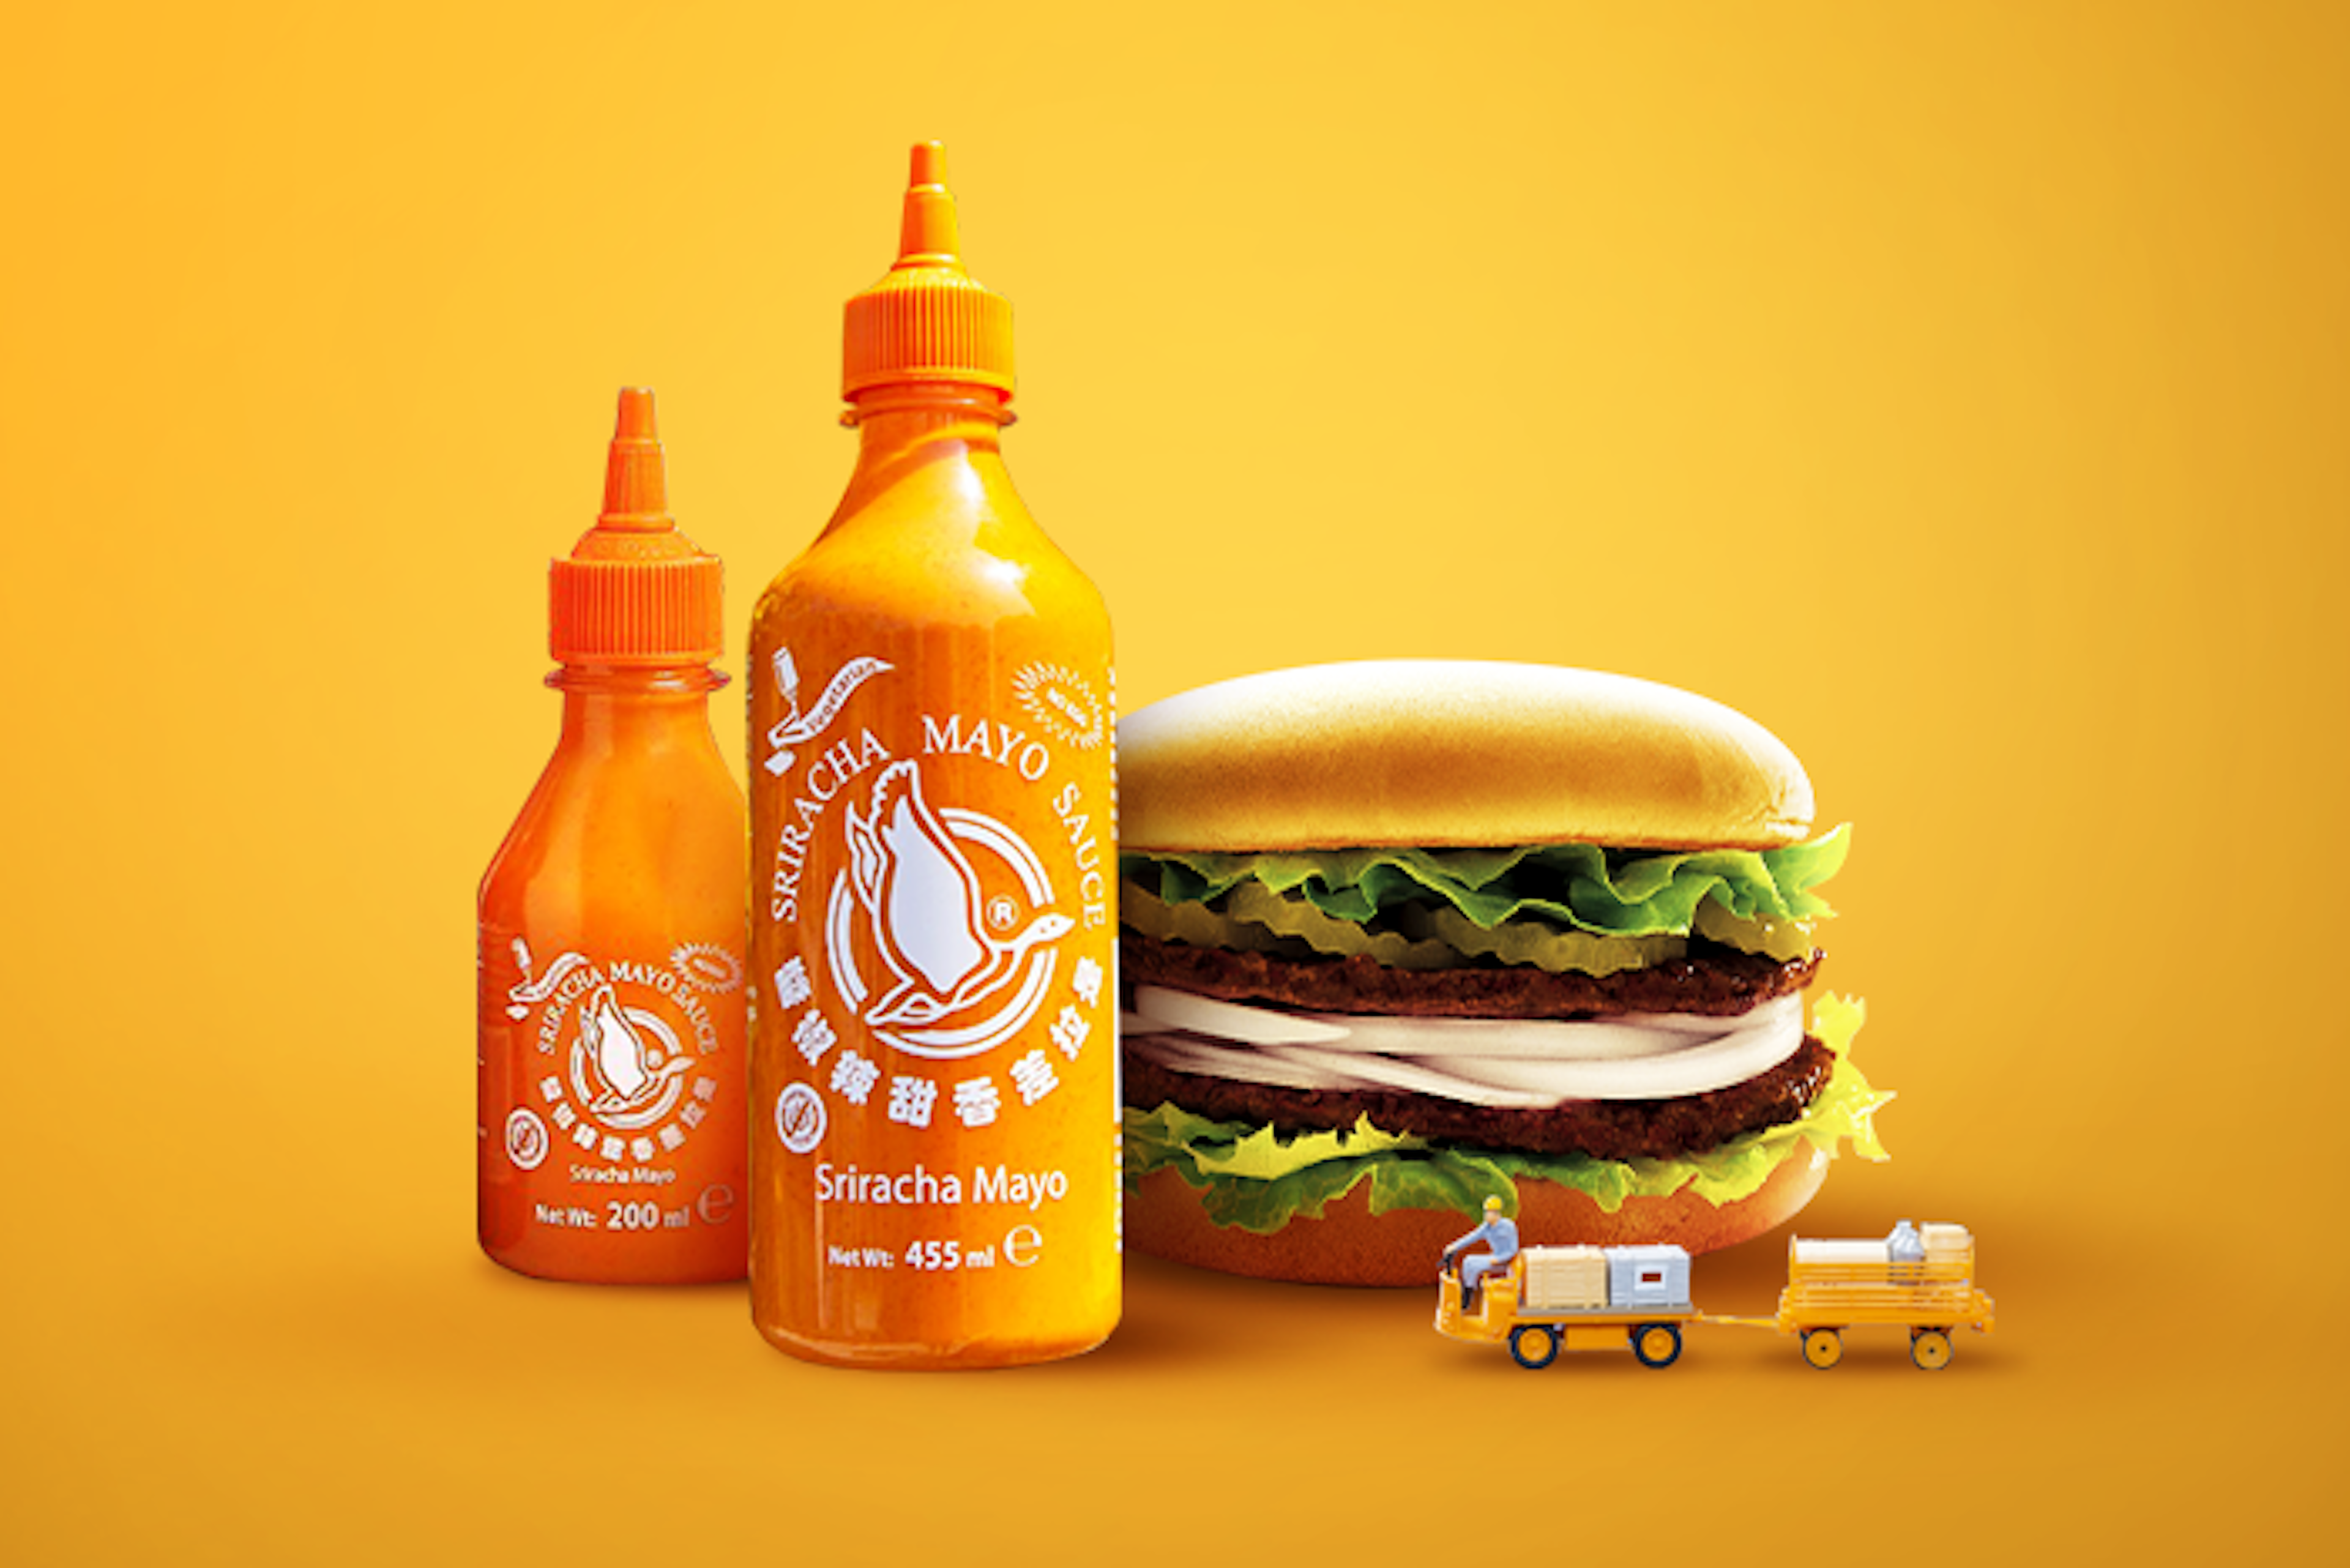 FLYING-GOOSE-Sriracha-Mayo-Sauce-Flasche-vorderansicht-auf-hellem-Hintergrund-mit-gut-sichtbarem-Markenlogo-und-Produktbezeichnung